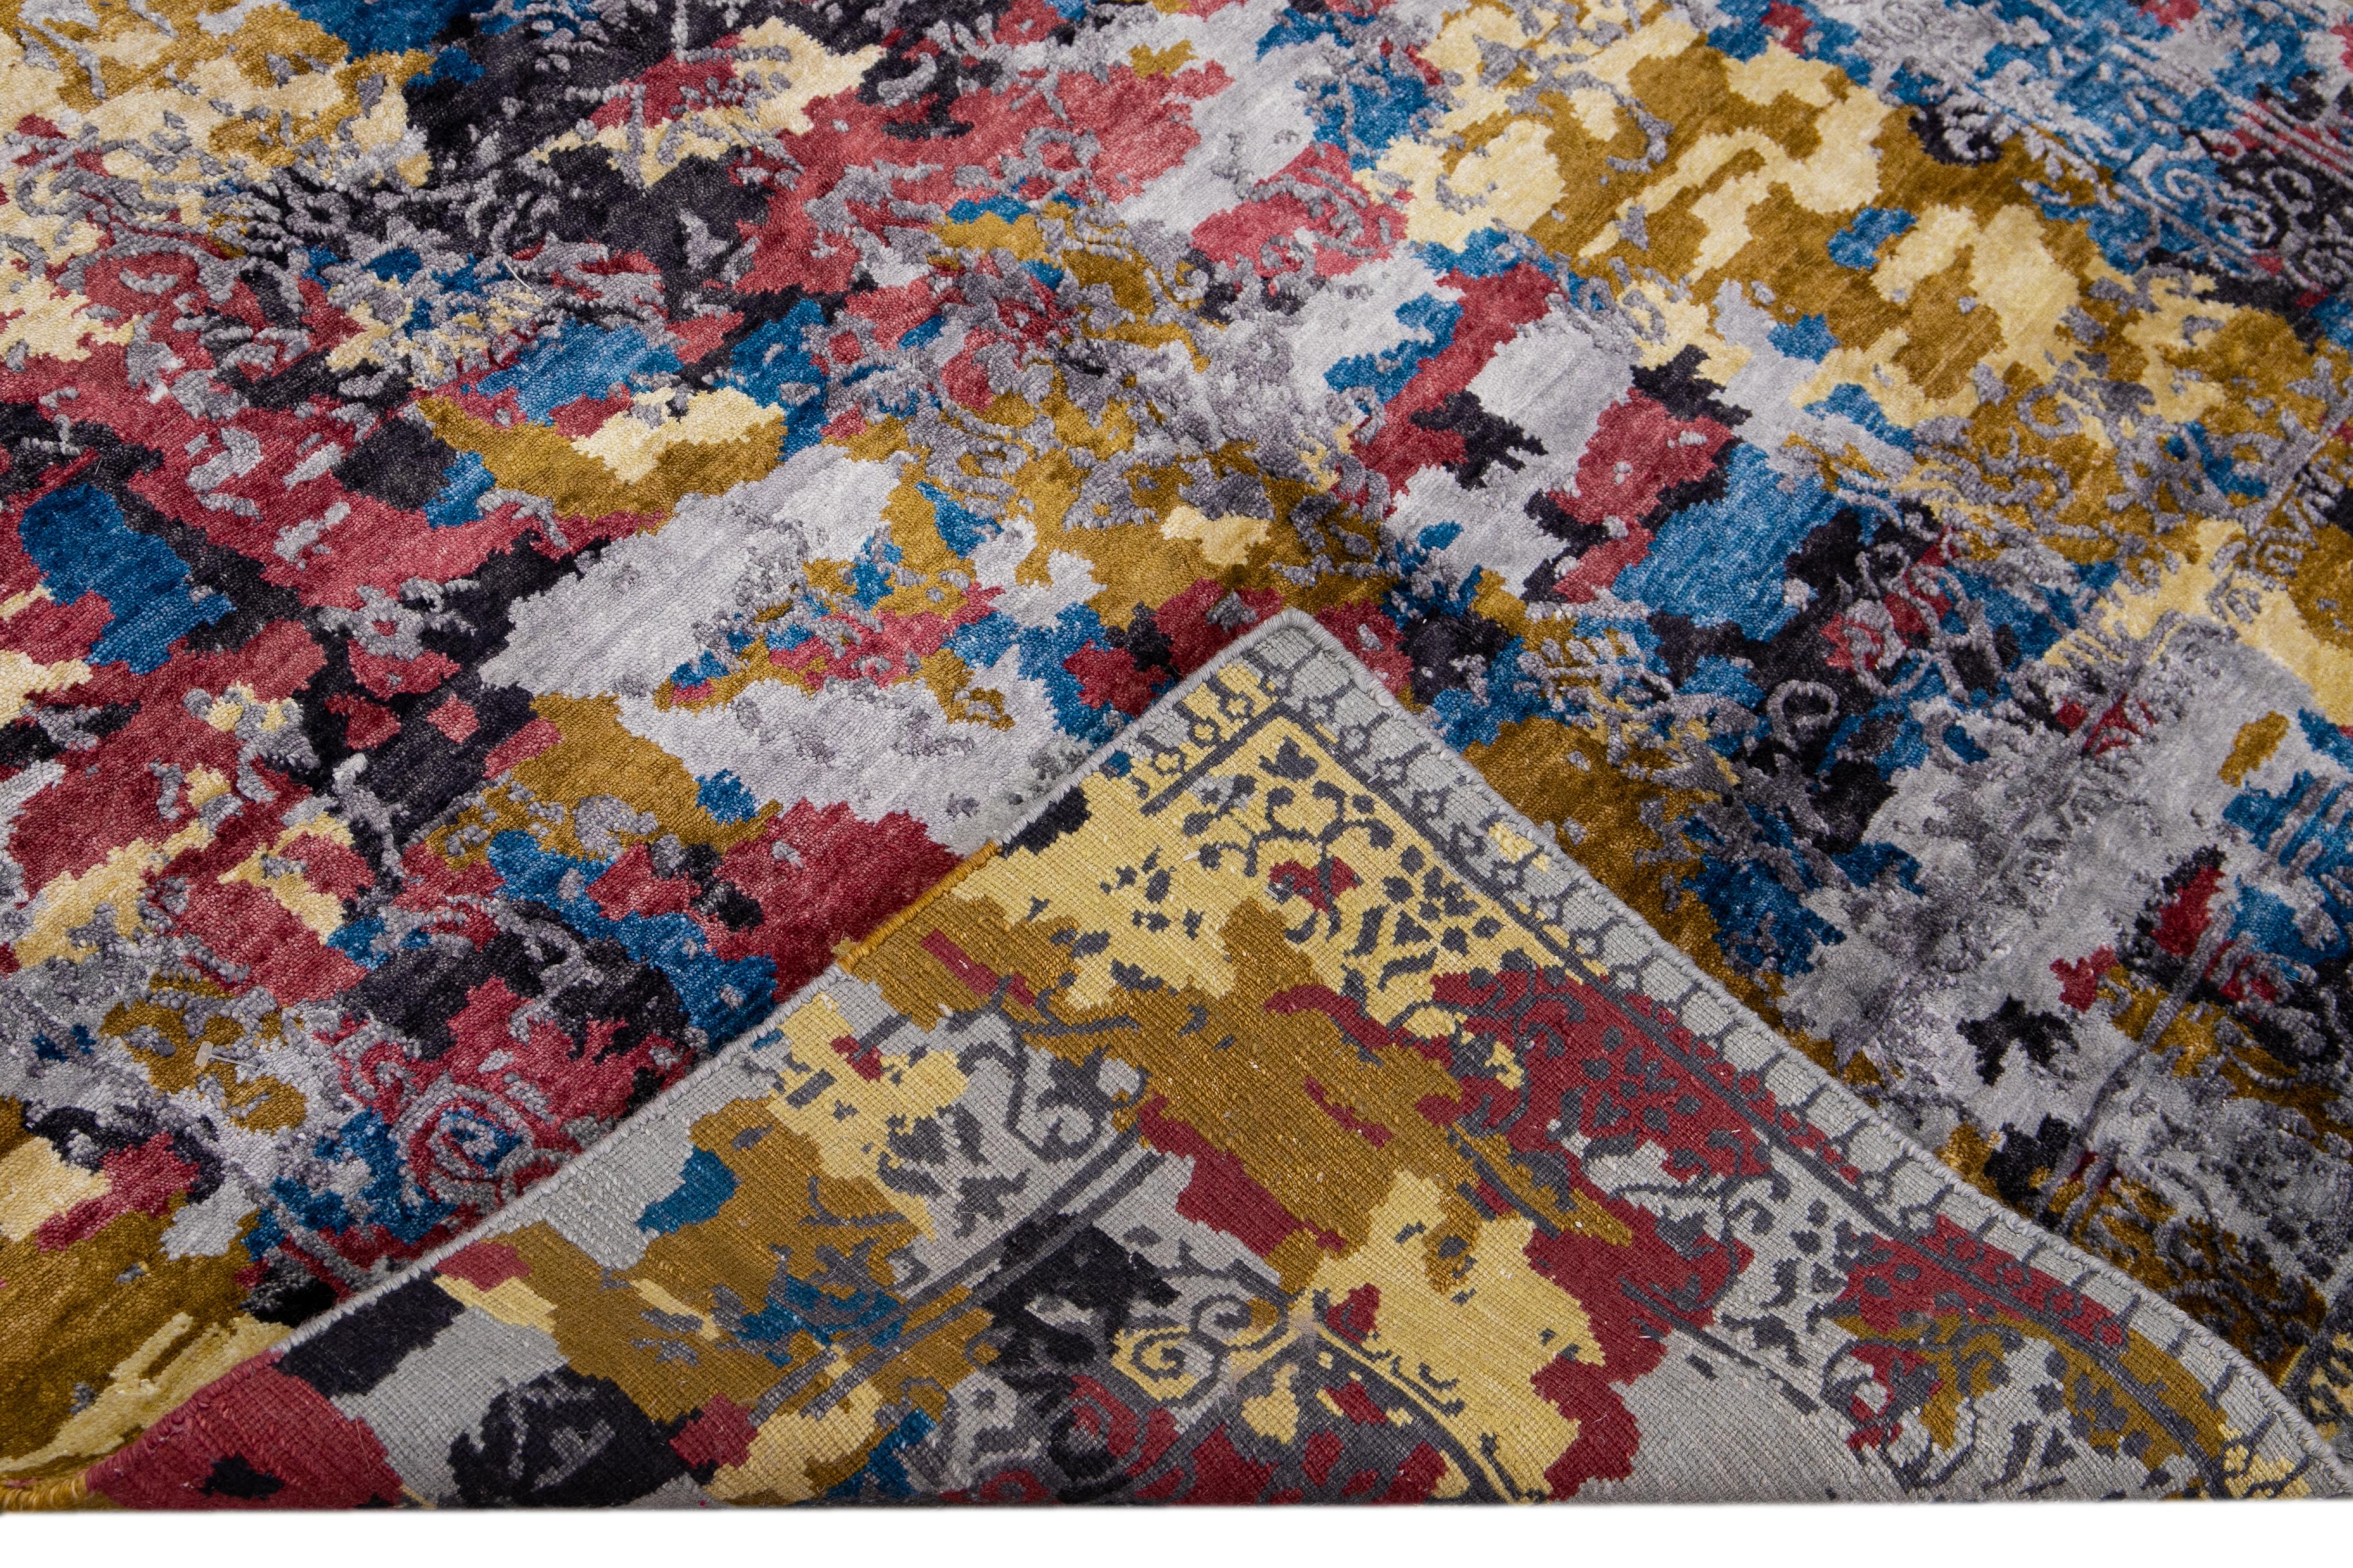 Magnifique tapis indien moderne noué à la main en laine et en soie avec un champ multicolore. Ce tapis moderne présente des accents rouges, bleus, gris et dorés, ainsi qu'un superbe design abstrait.

Ce tapis mesure : 5' x 6'11